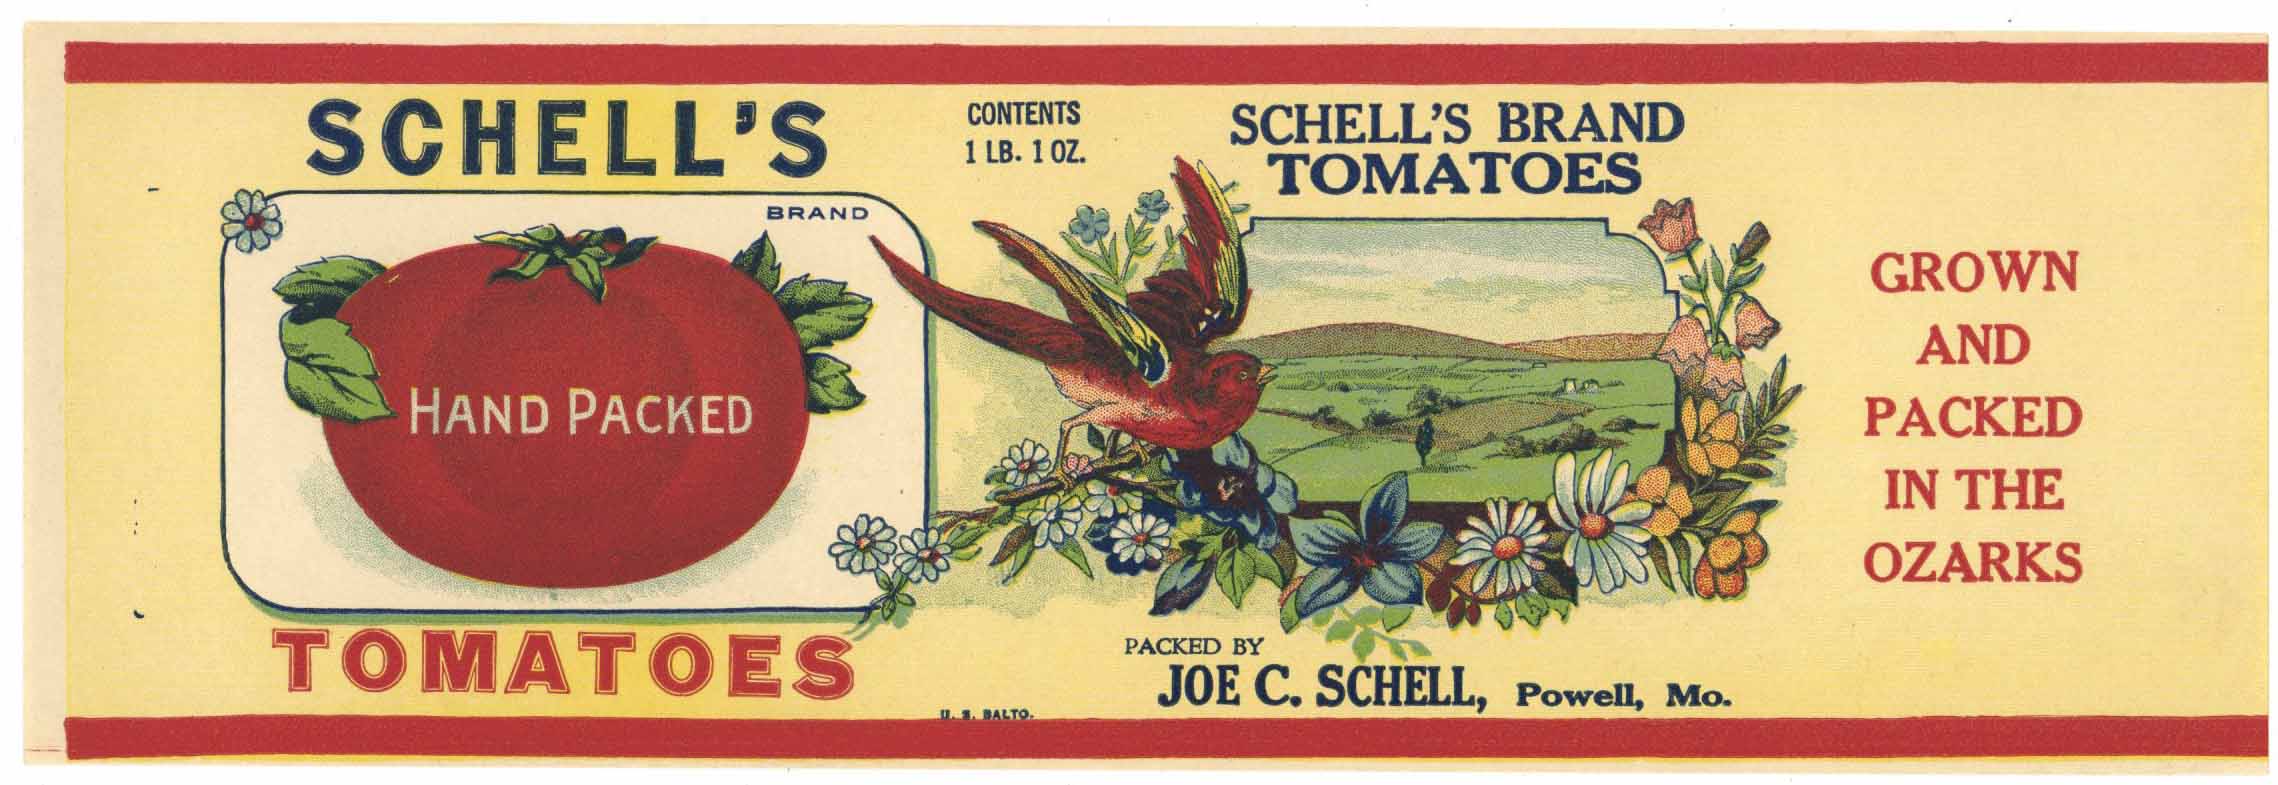 printable vintage food labels